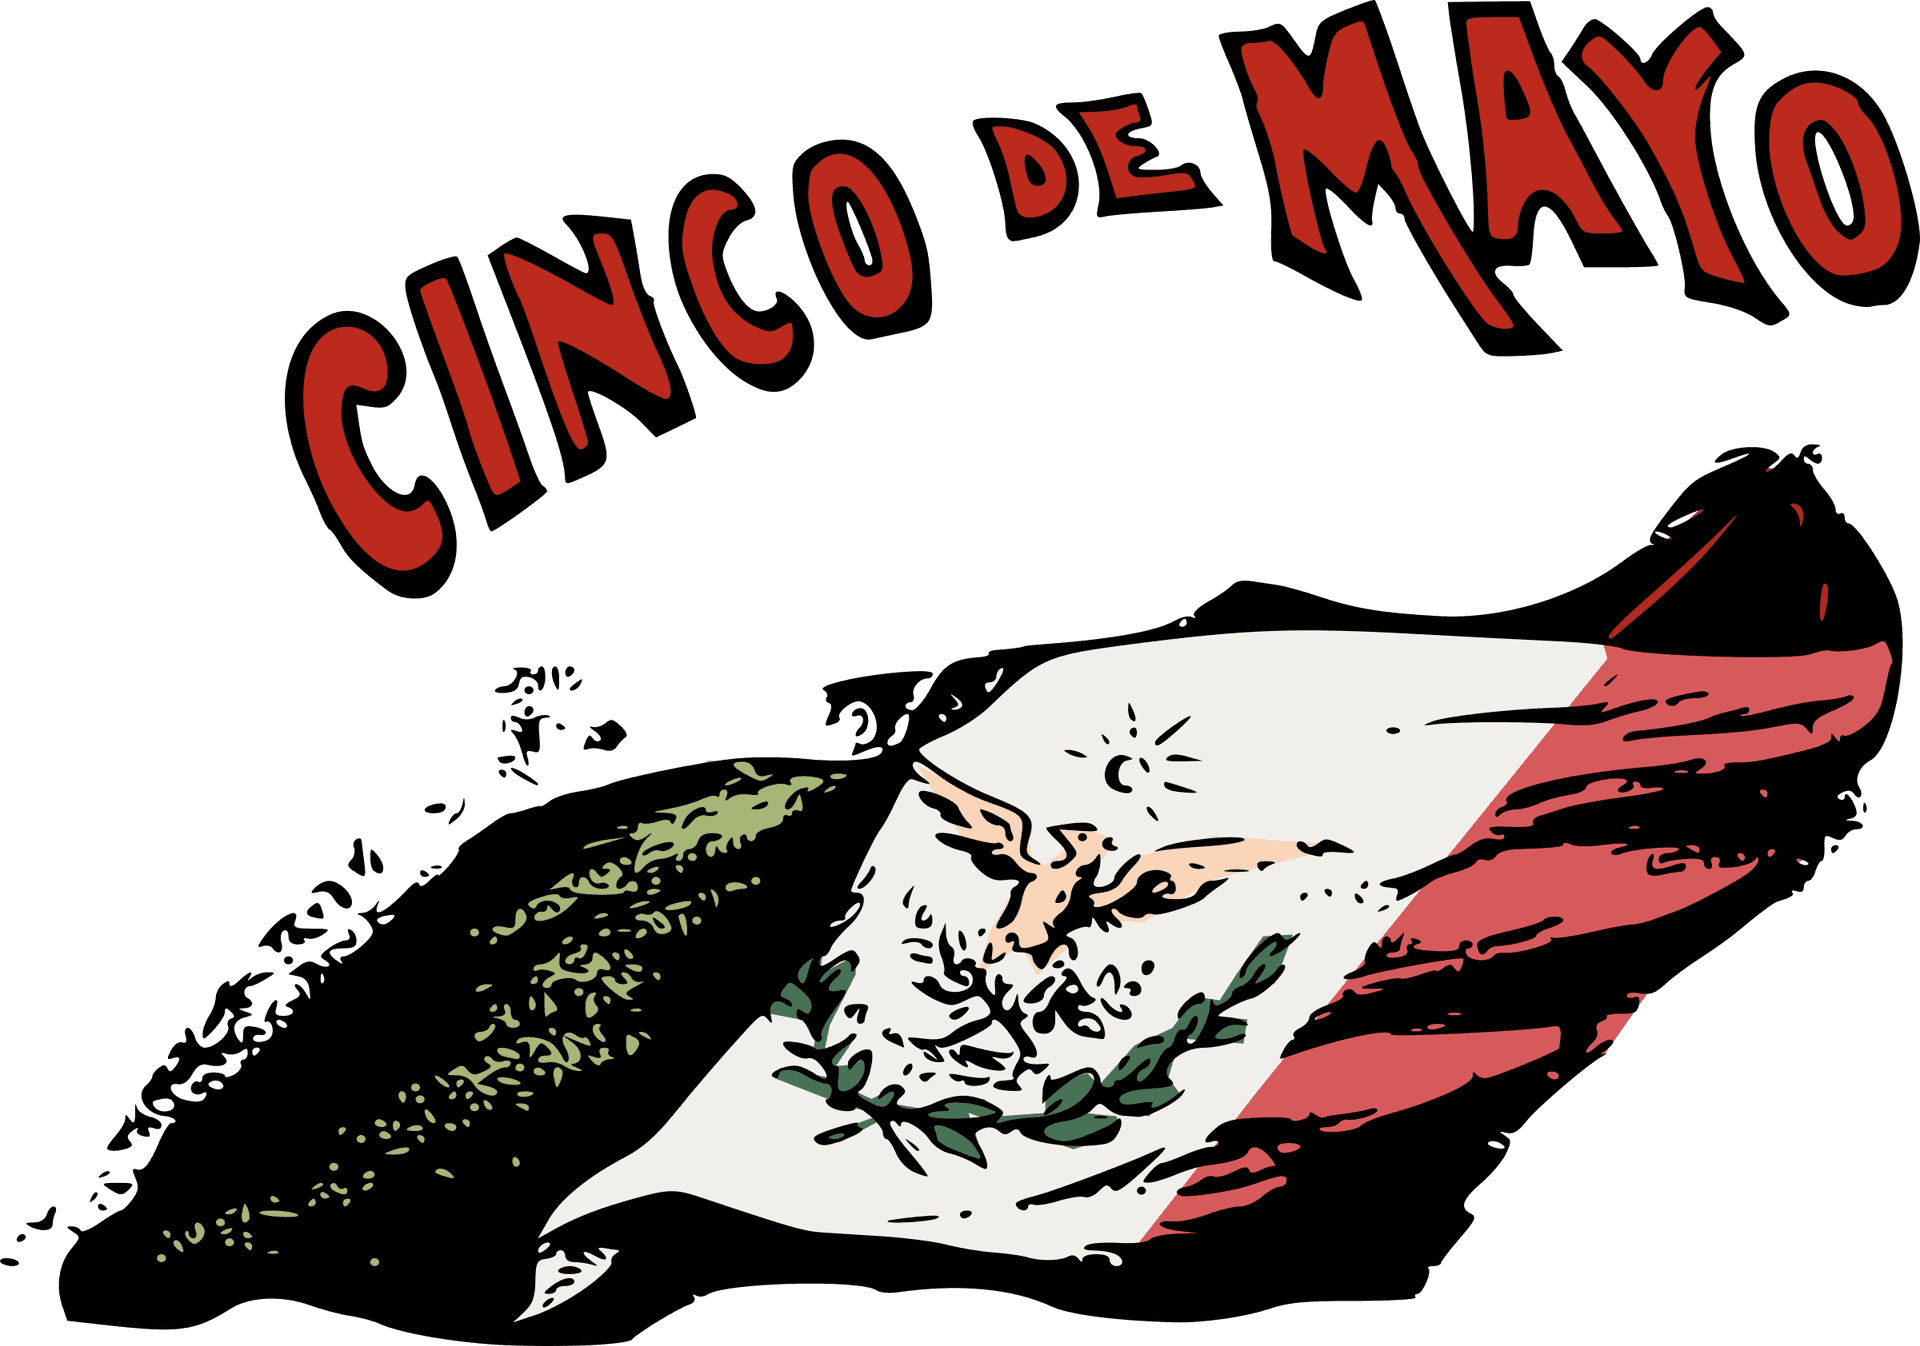 Cincode Mayo Celebration Illustration PNG image